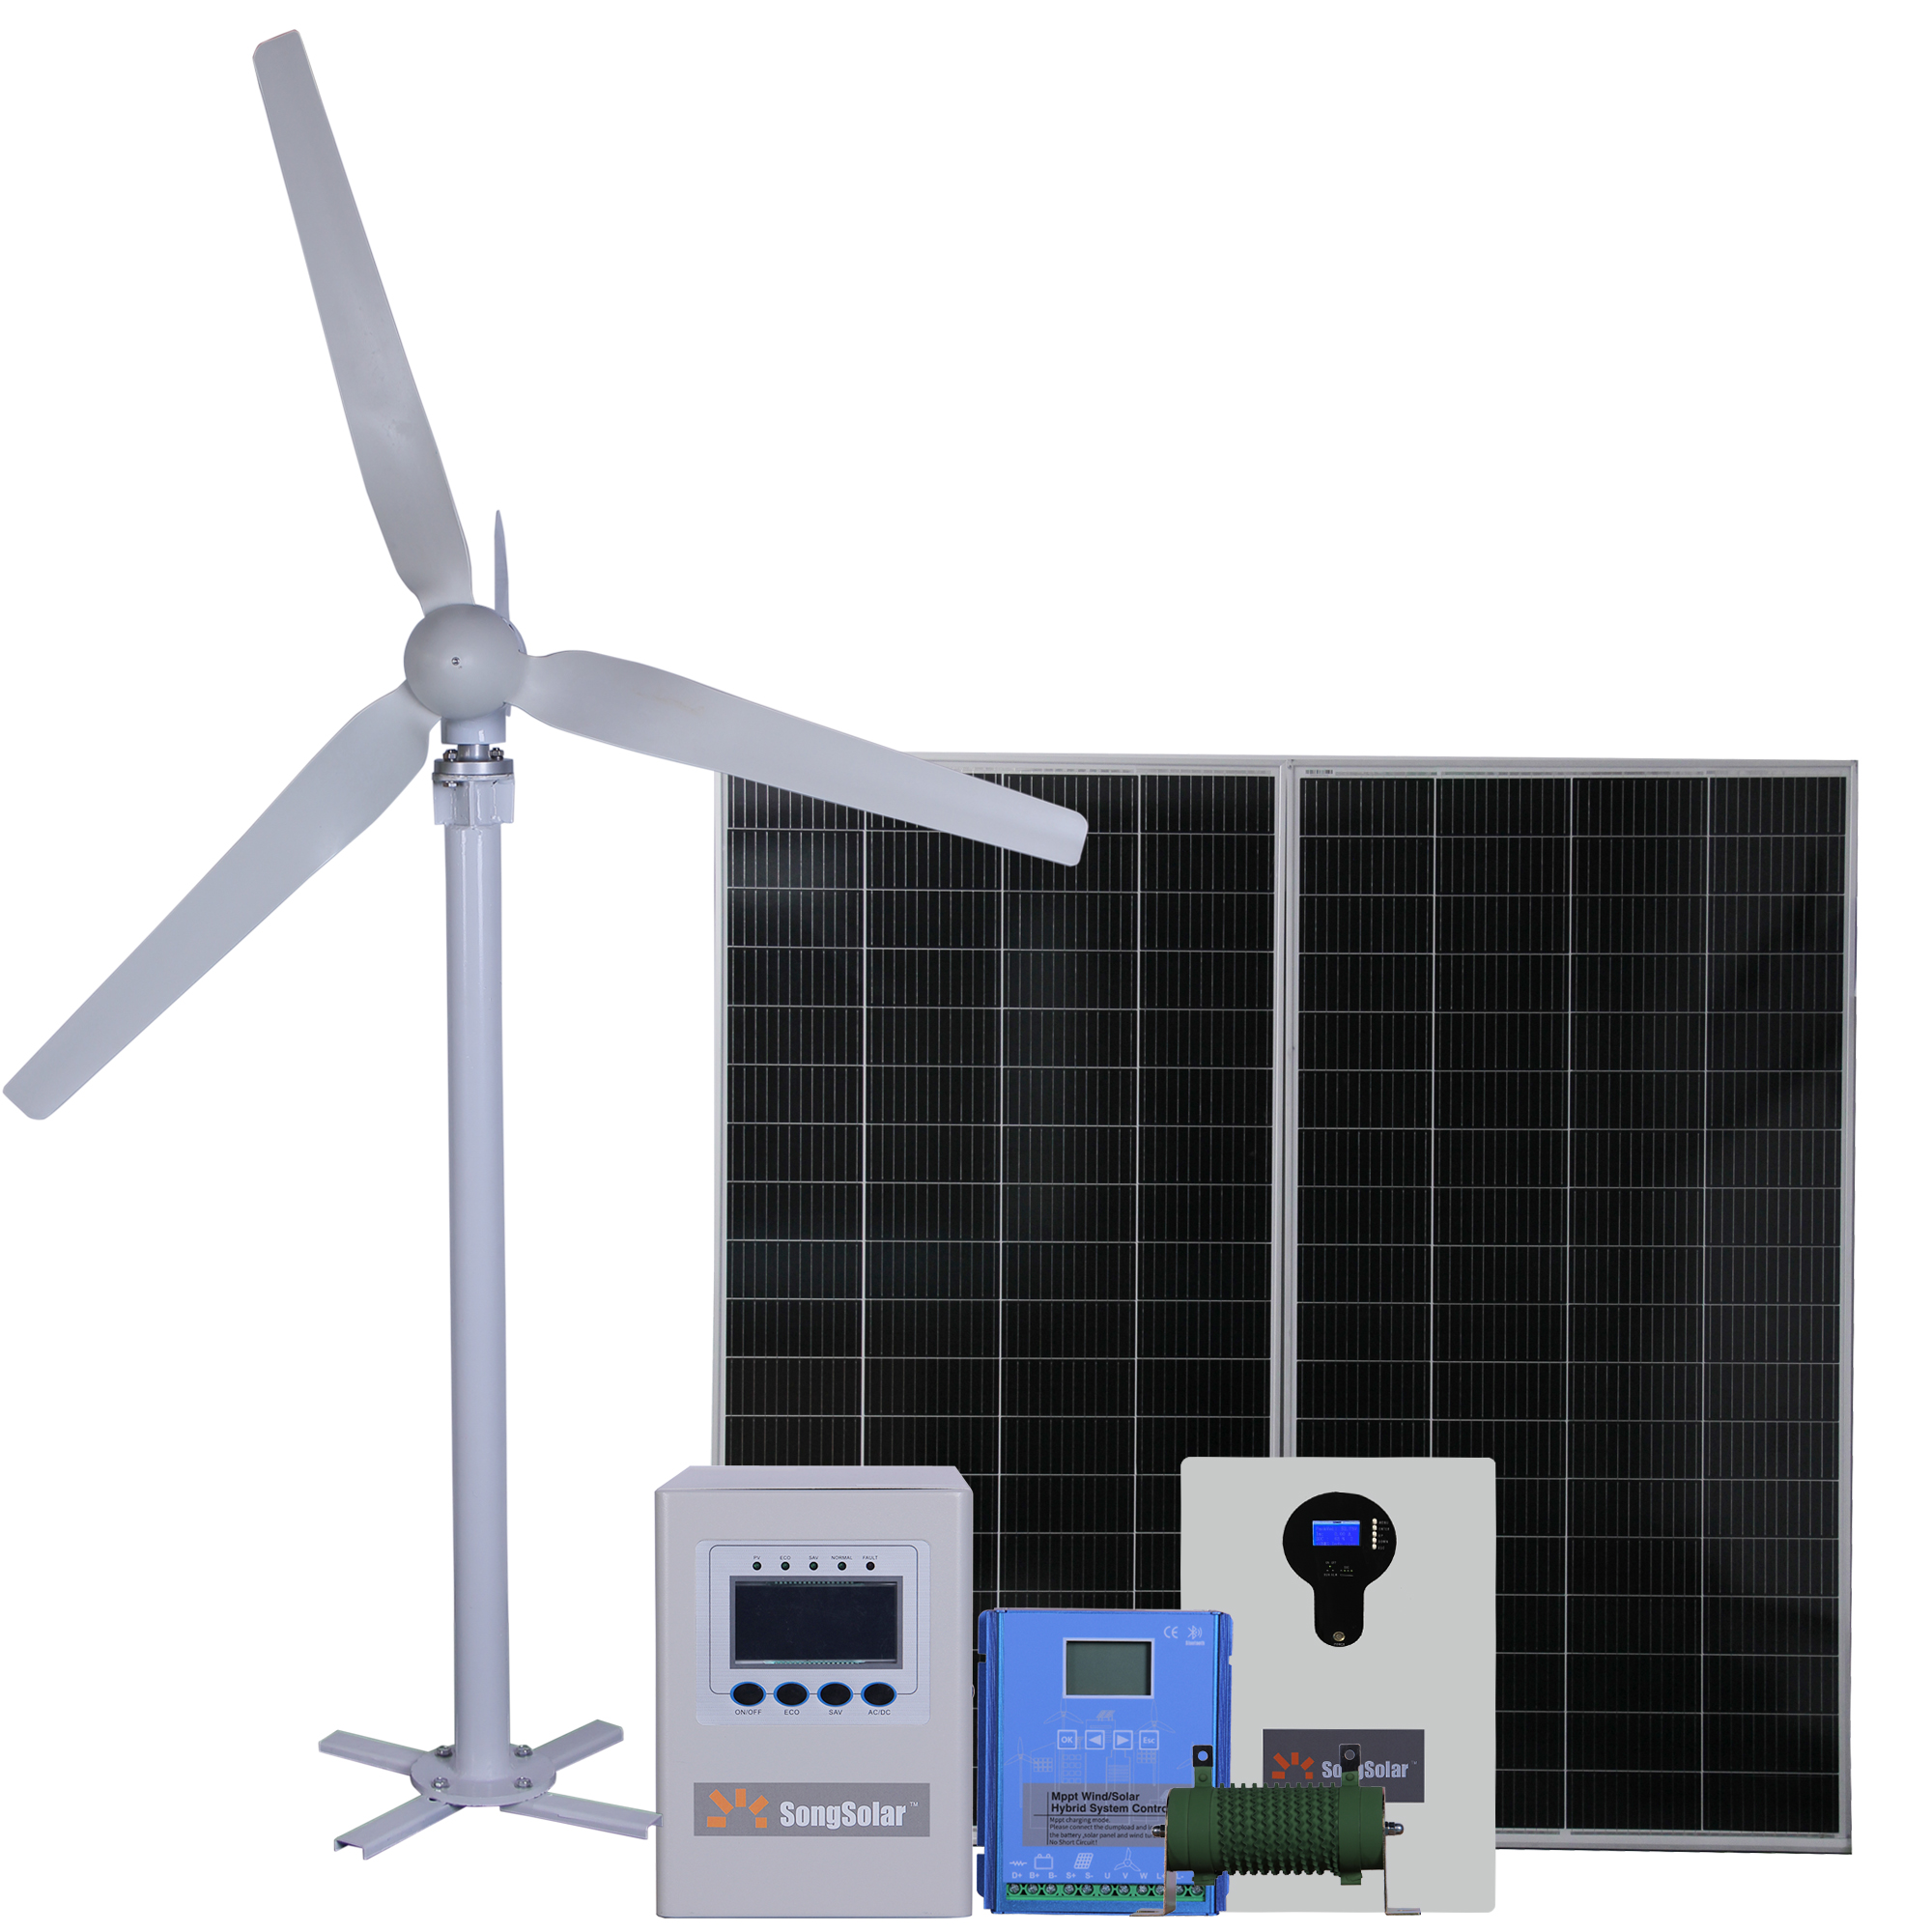 ການຜະລິດພະລັງງານລົມ 200W -100kW ແກນຕັ້ງ & Horizontal Axis Wind Turbine ສໍາລັບລະບົບພະລັງງານລົມ